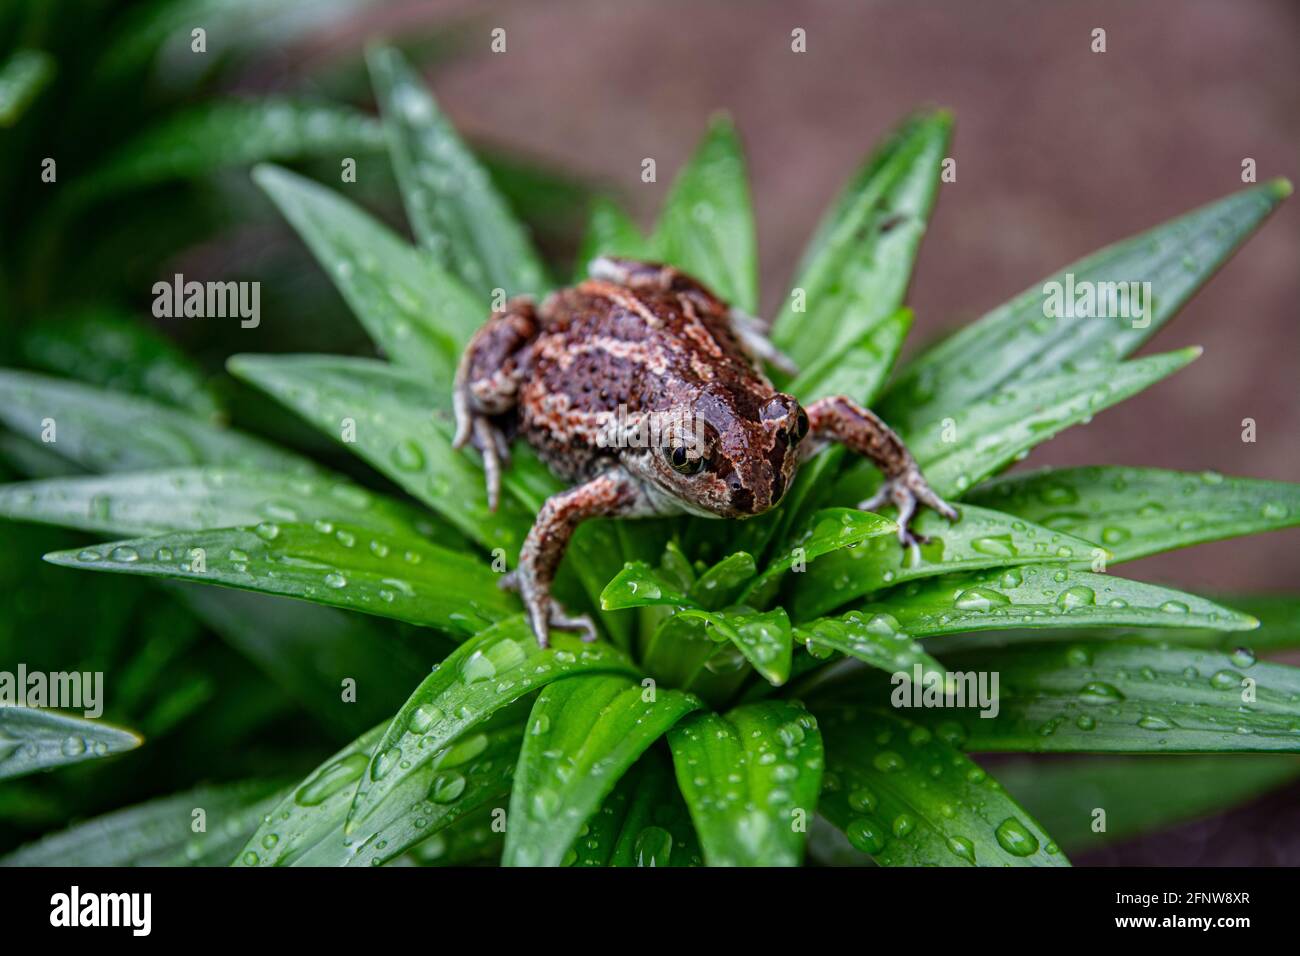 La grenouille brune commune européenne se trouve dans l'herbe verte après la pluie. Rana temporaria gros plan. Banque D'Images